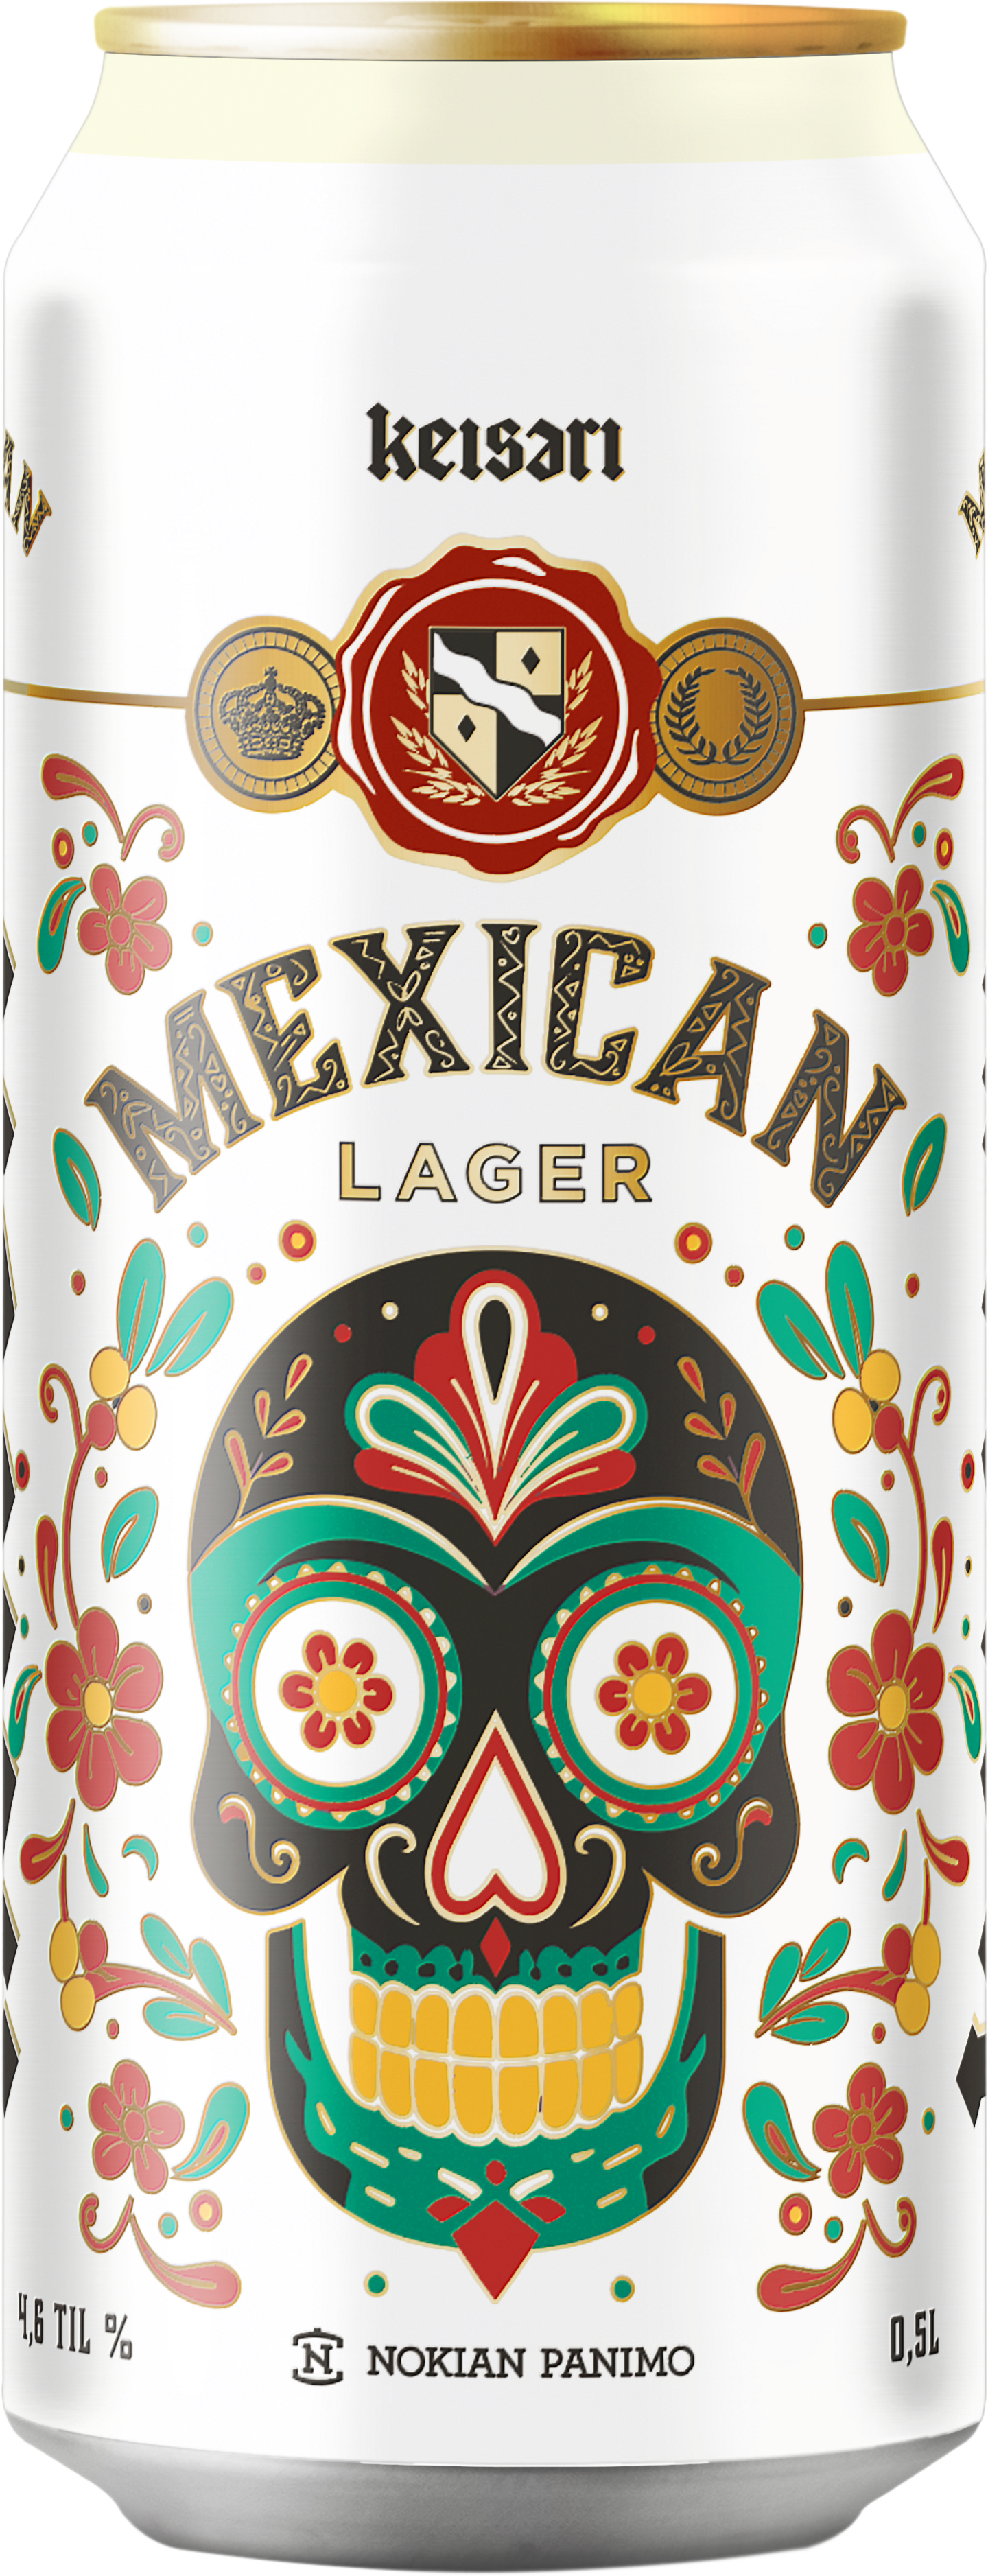 Keisari Mexican Lager olut 4,5% 0,5l